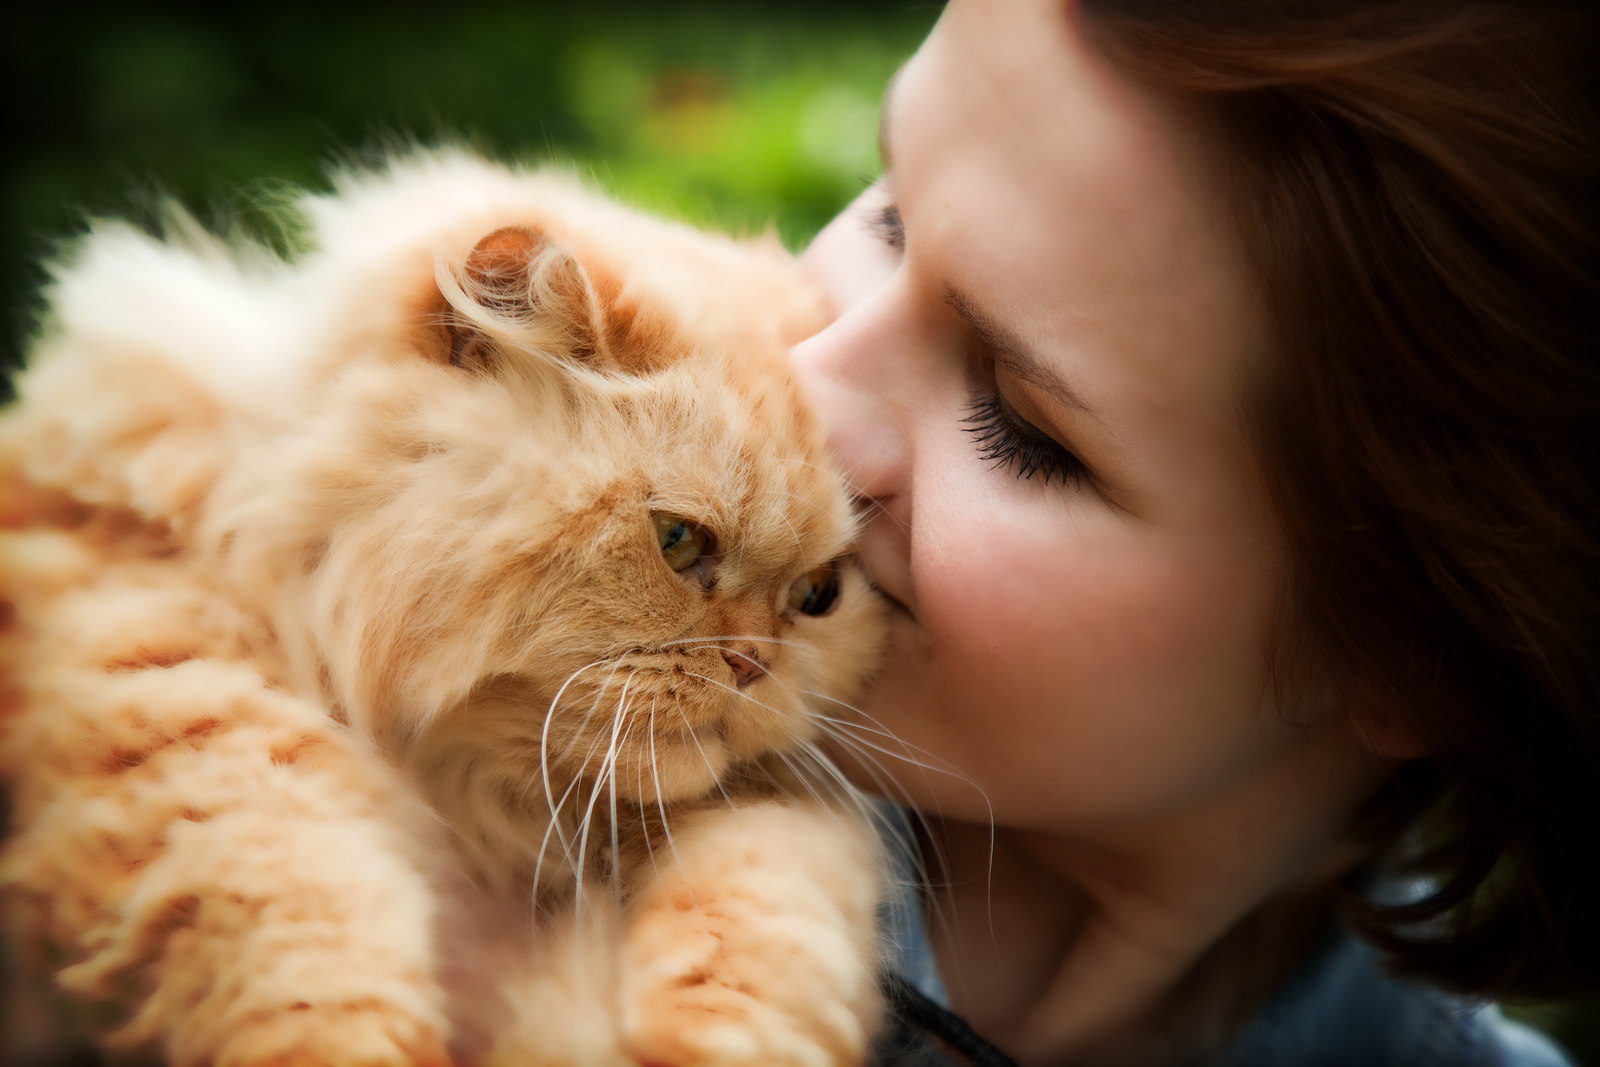 سر العلاقة بين عزوبية النساء و امتلاك القطط !